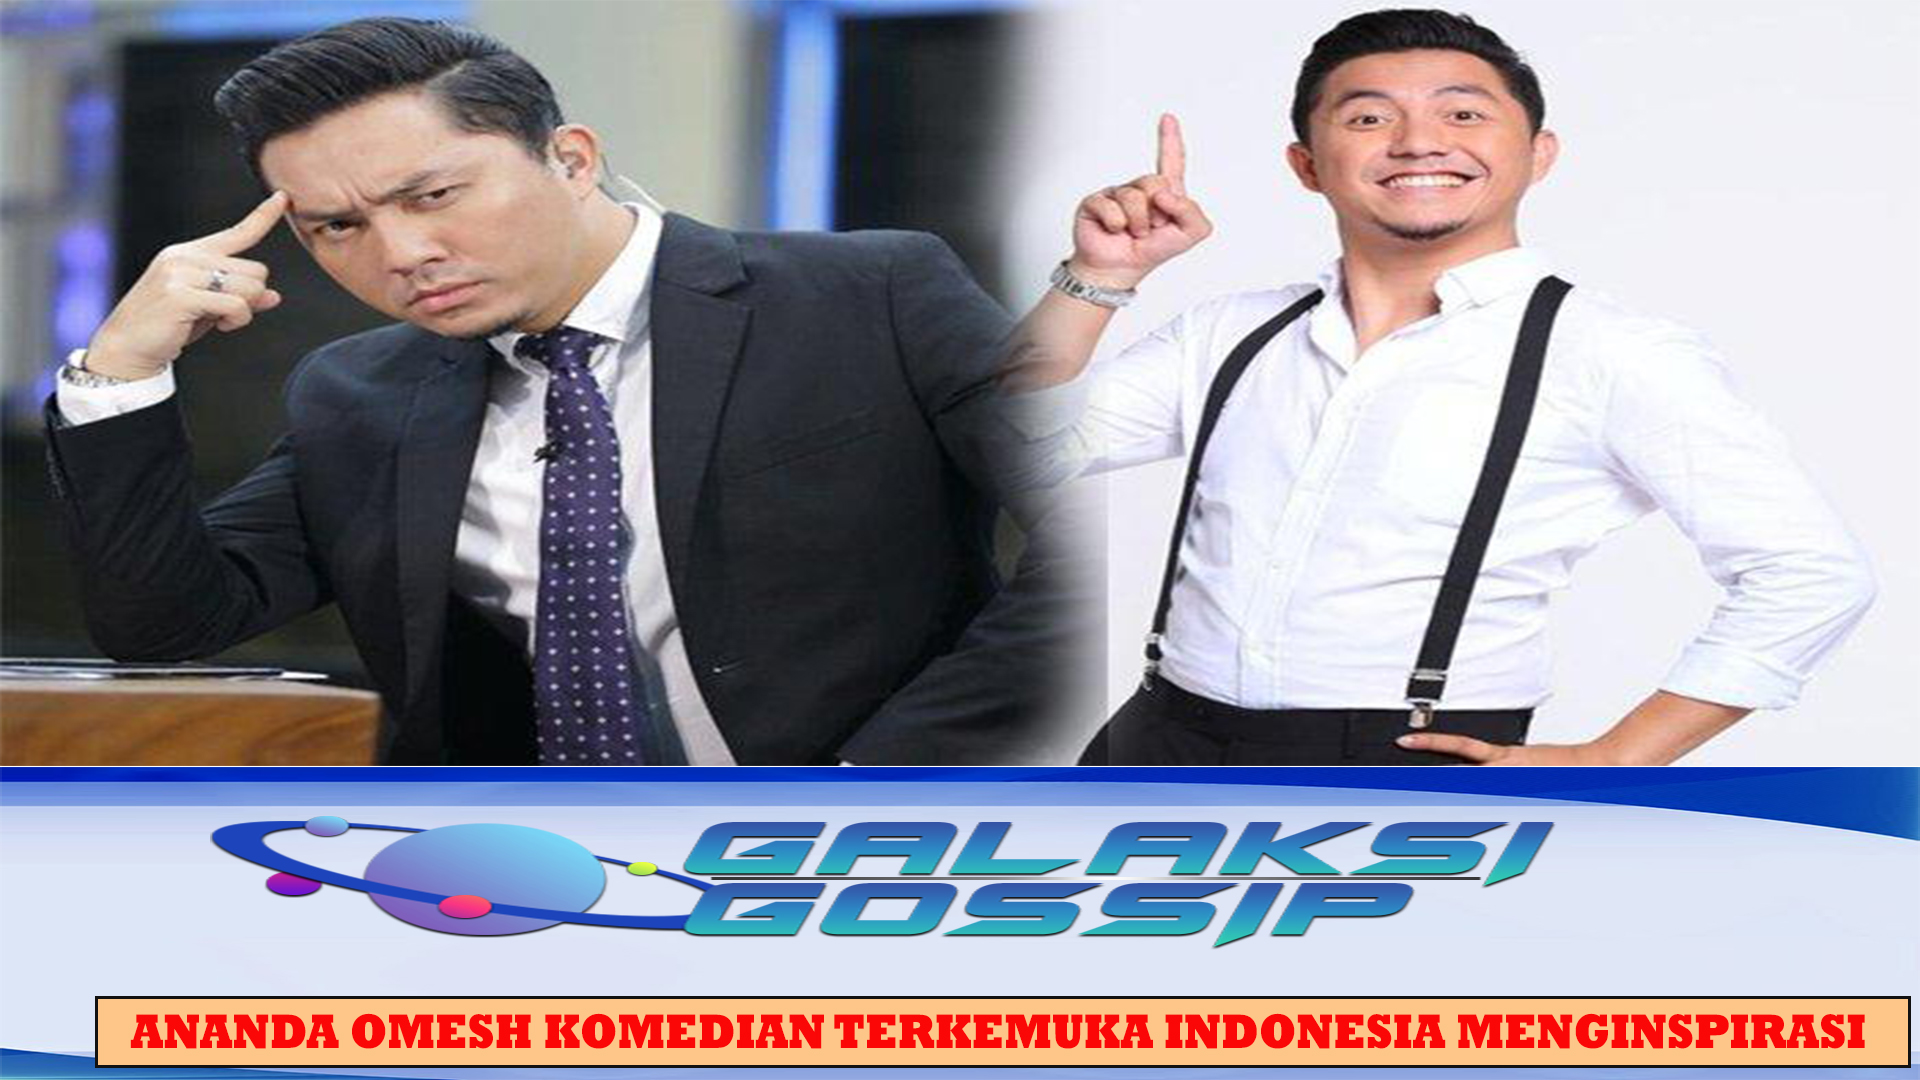 Ananda Omesh Komedian Terkemuka Indonesia Menginspirasi